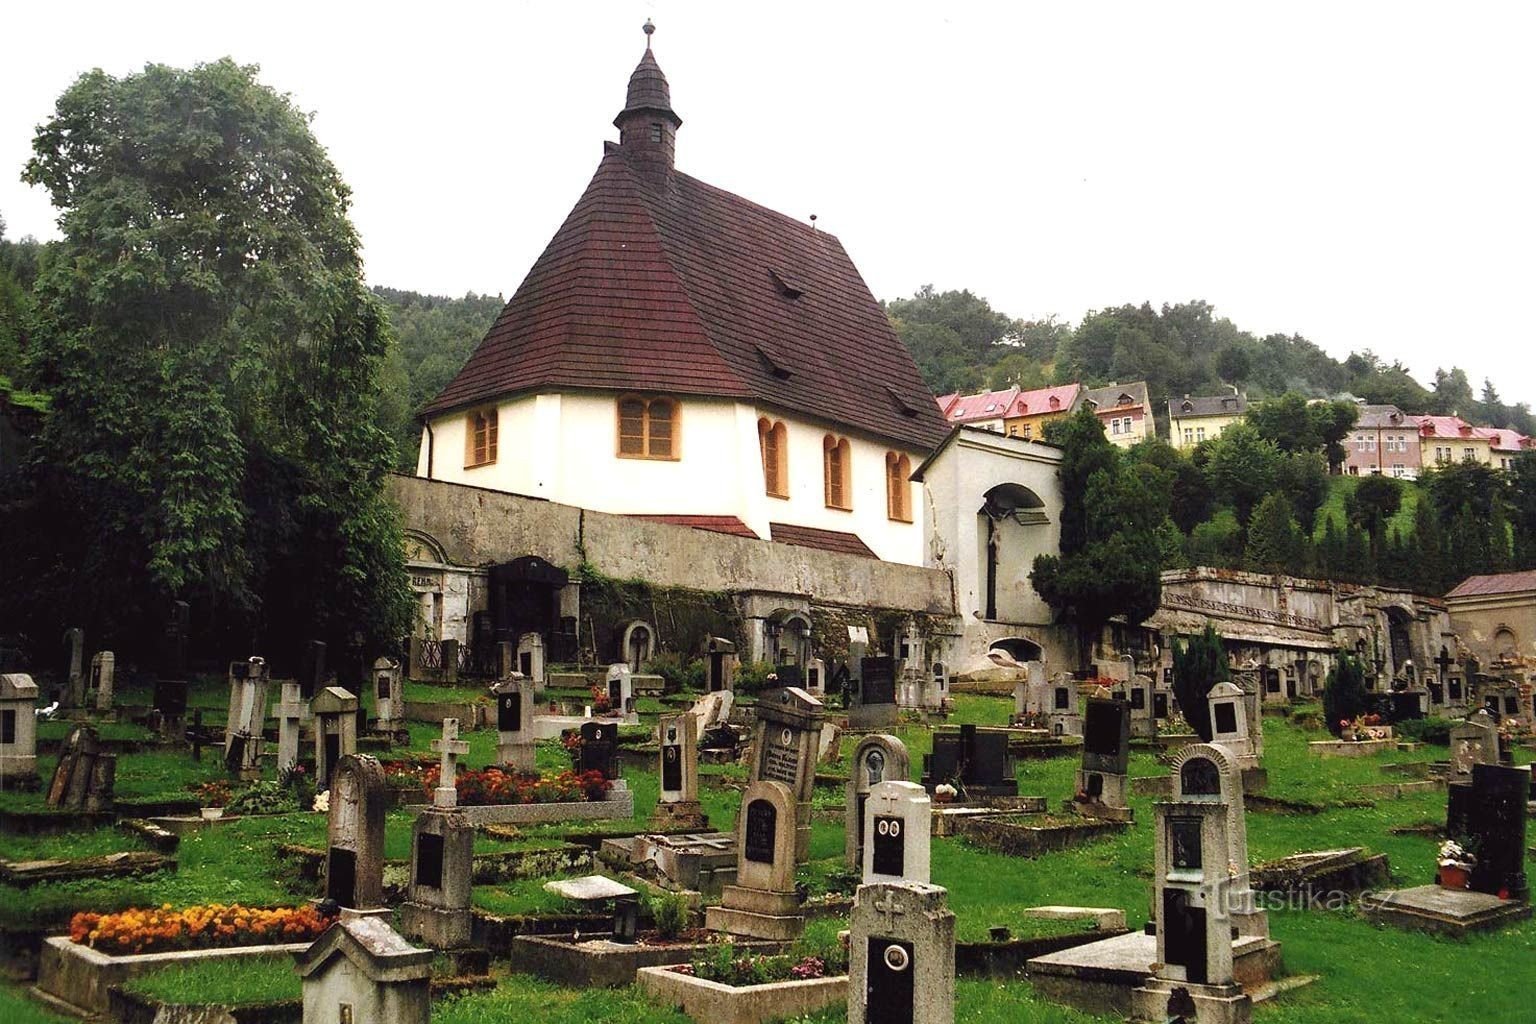 Nhìn từ nghĩa trang - Tác giả: V. Vojíř